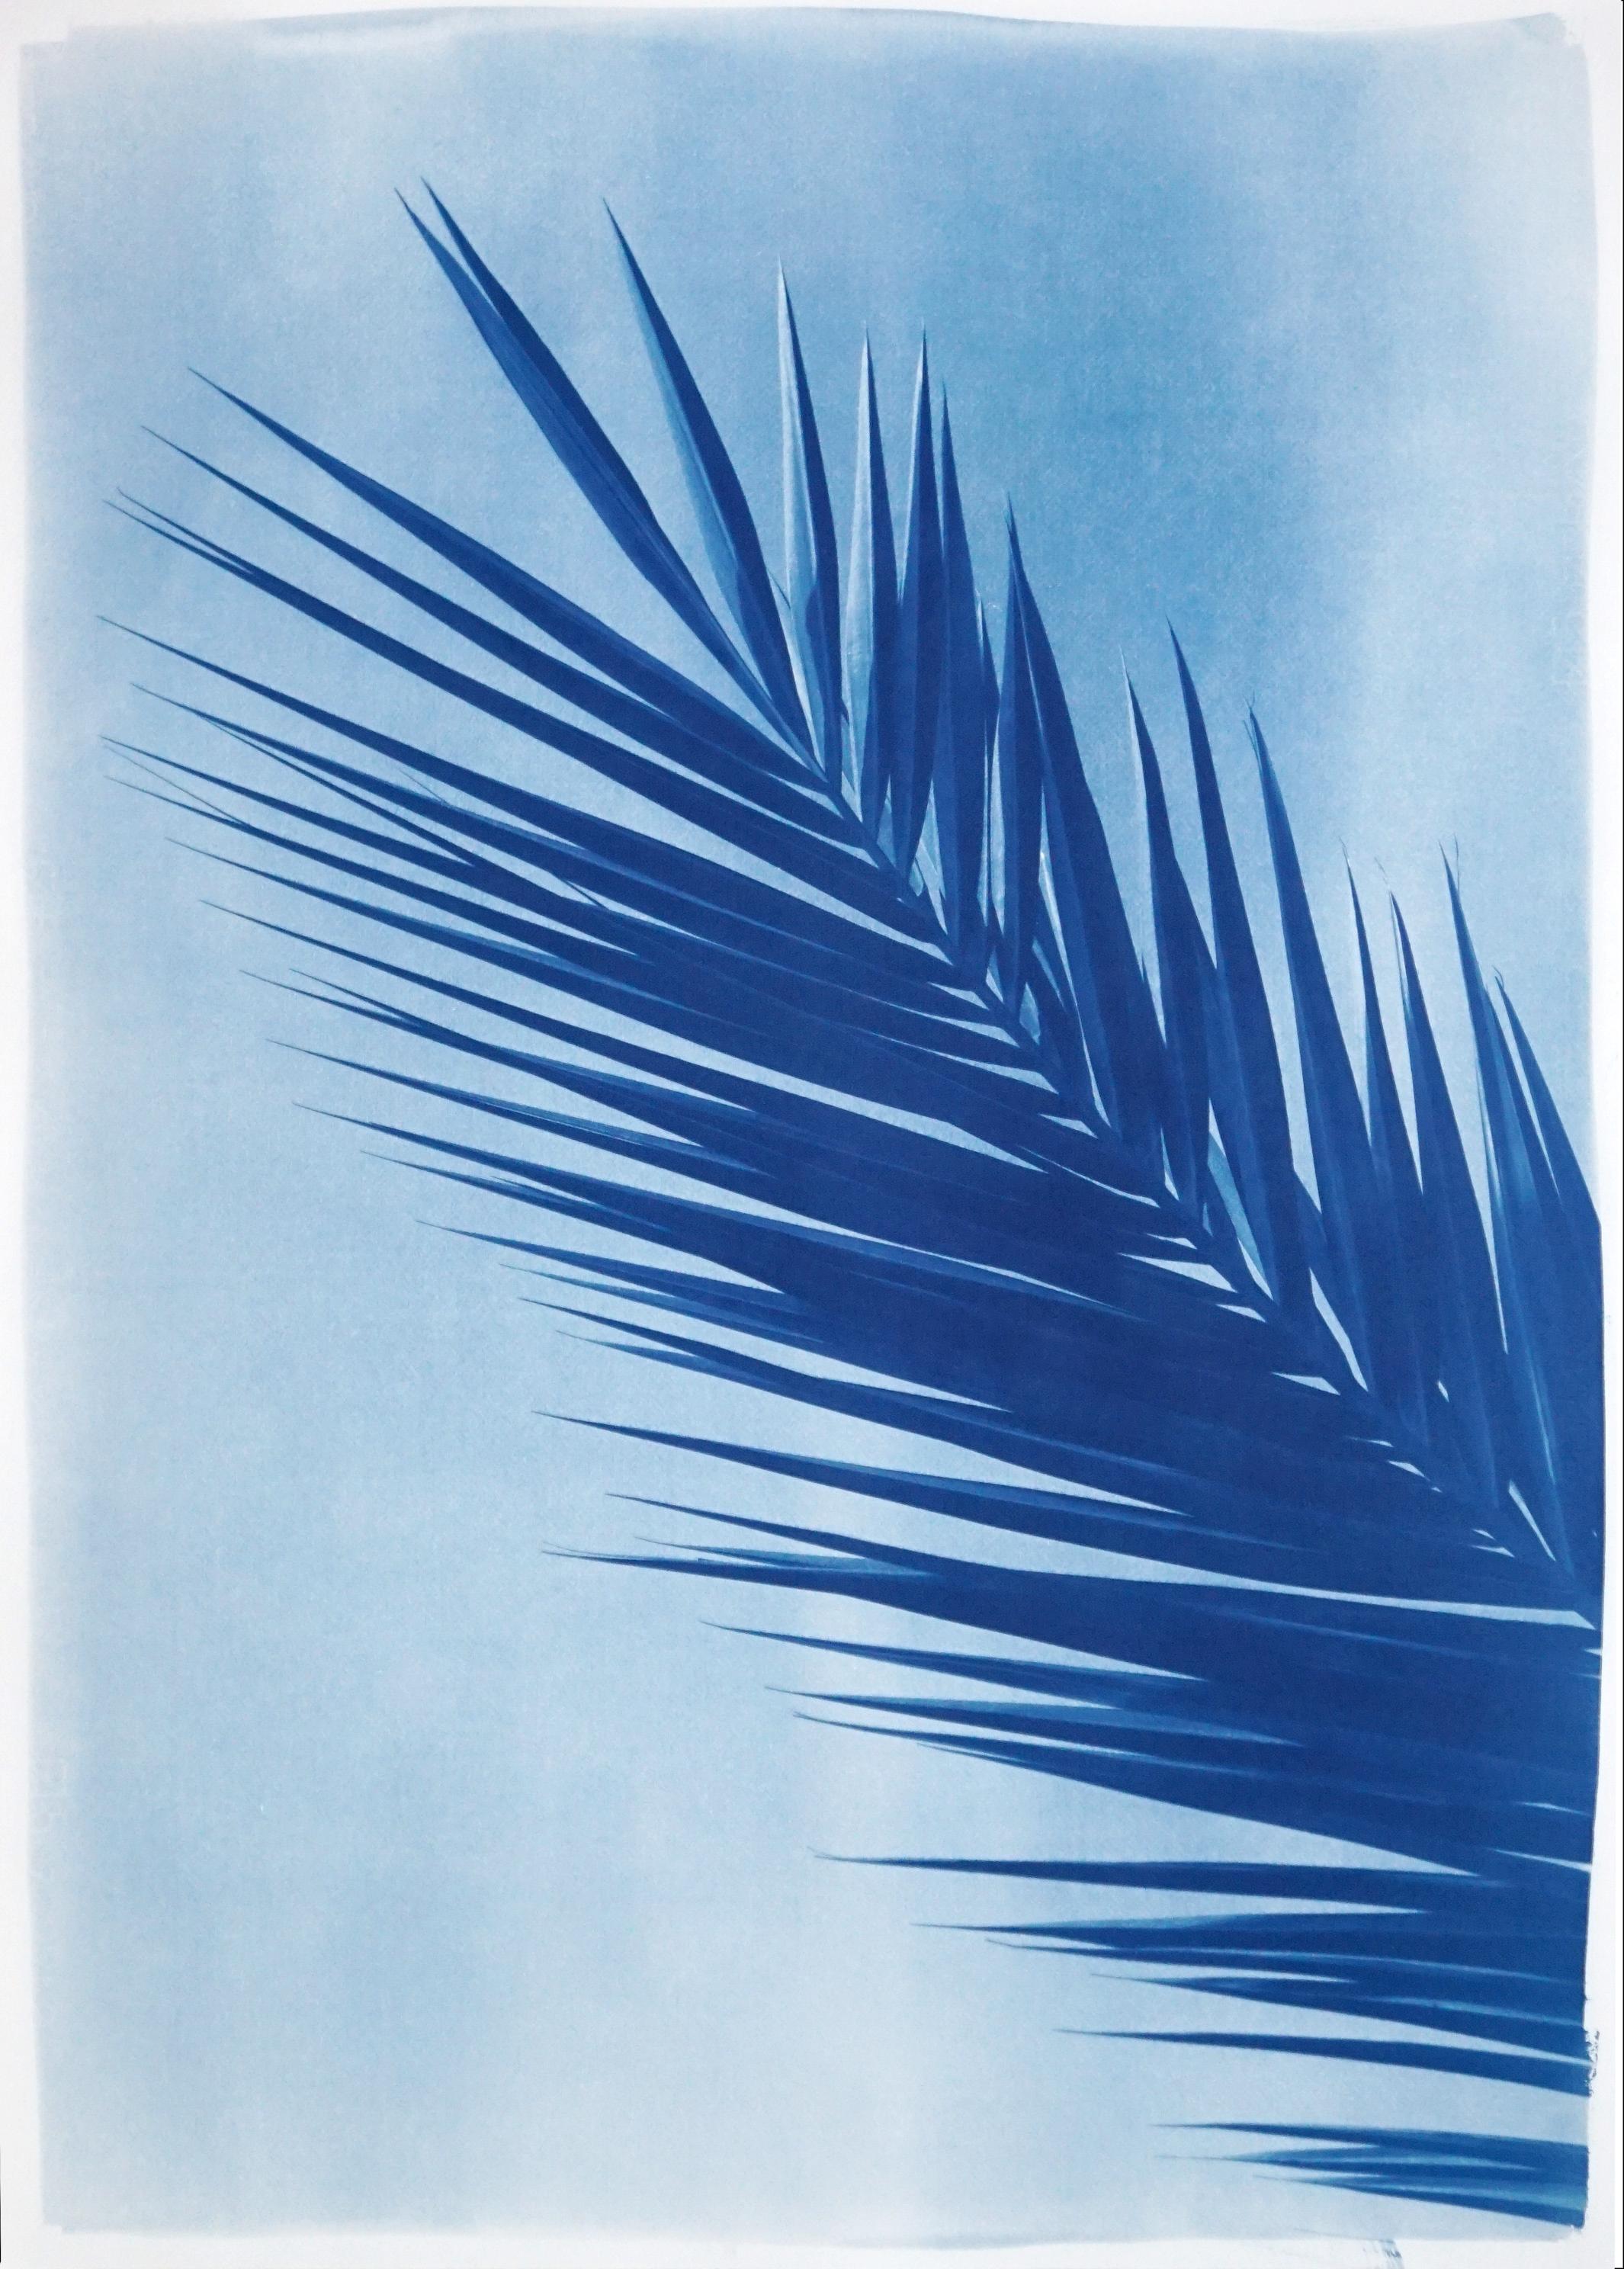 Feuille de palmier au-dessus d'un ciel bleu, cyanotype botanique sur papier fait à la main, vintage tropical